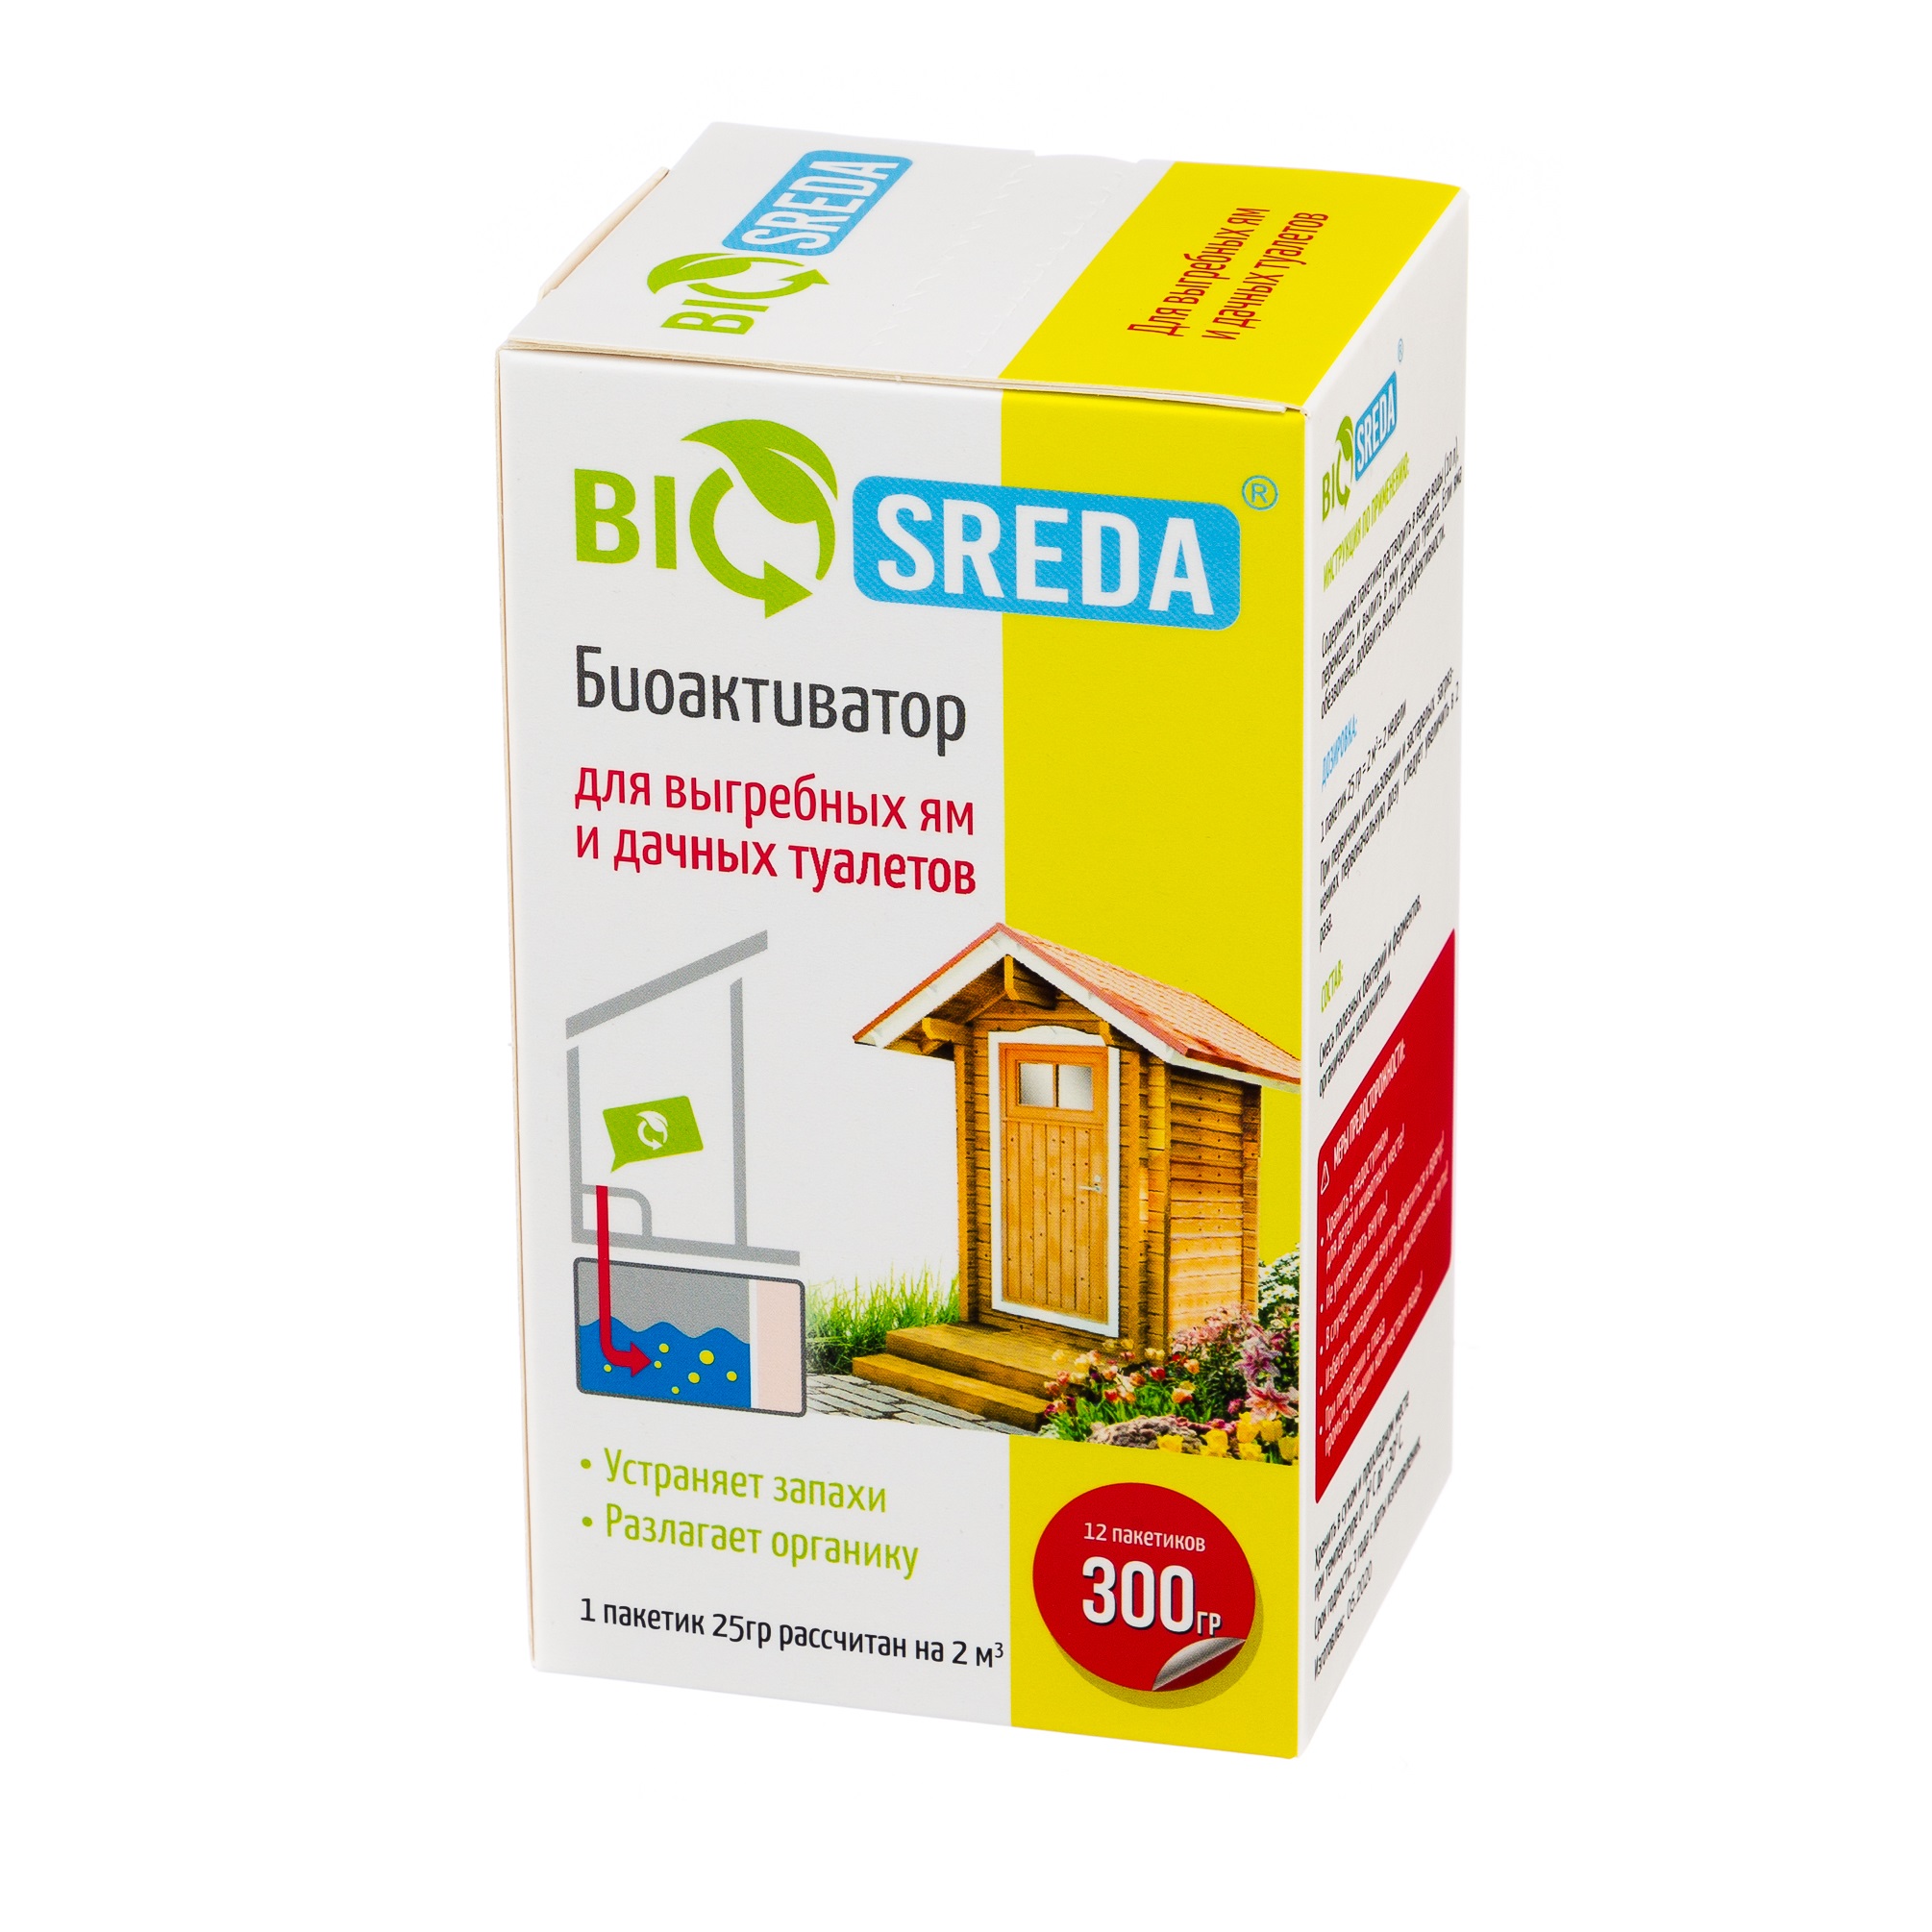 Биоактиватор Biosreda для выгребных ям и дачных туалетов, 300 гр 12 пакетов биоактиватор expel саше для дачных туалетов и септиков 150 г